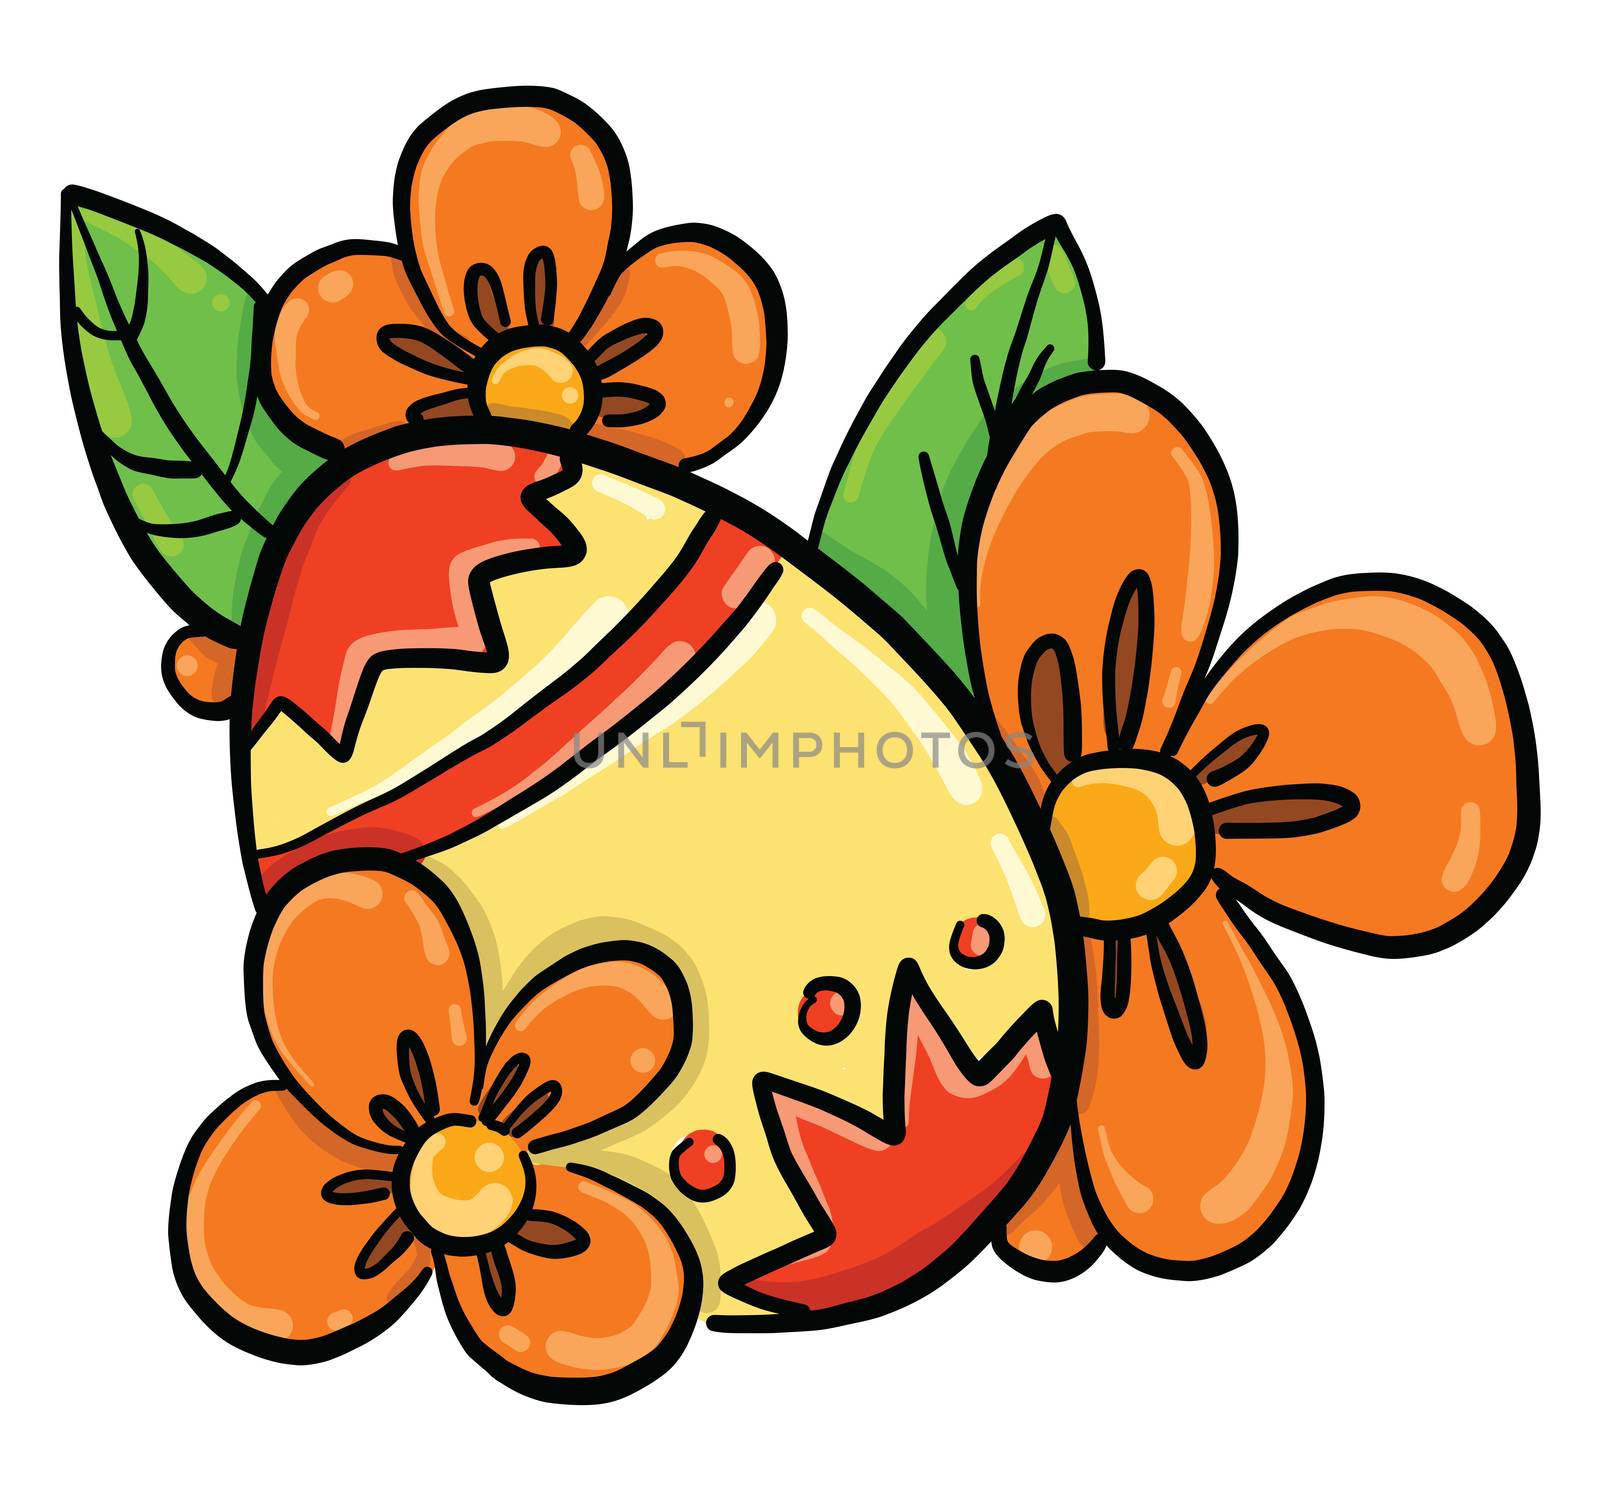 Yellow easter egg , illustration, vector on white background by Morphart